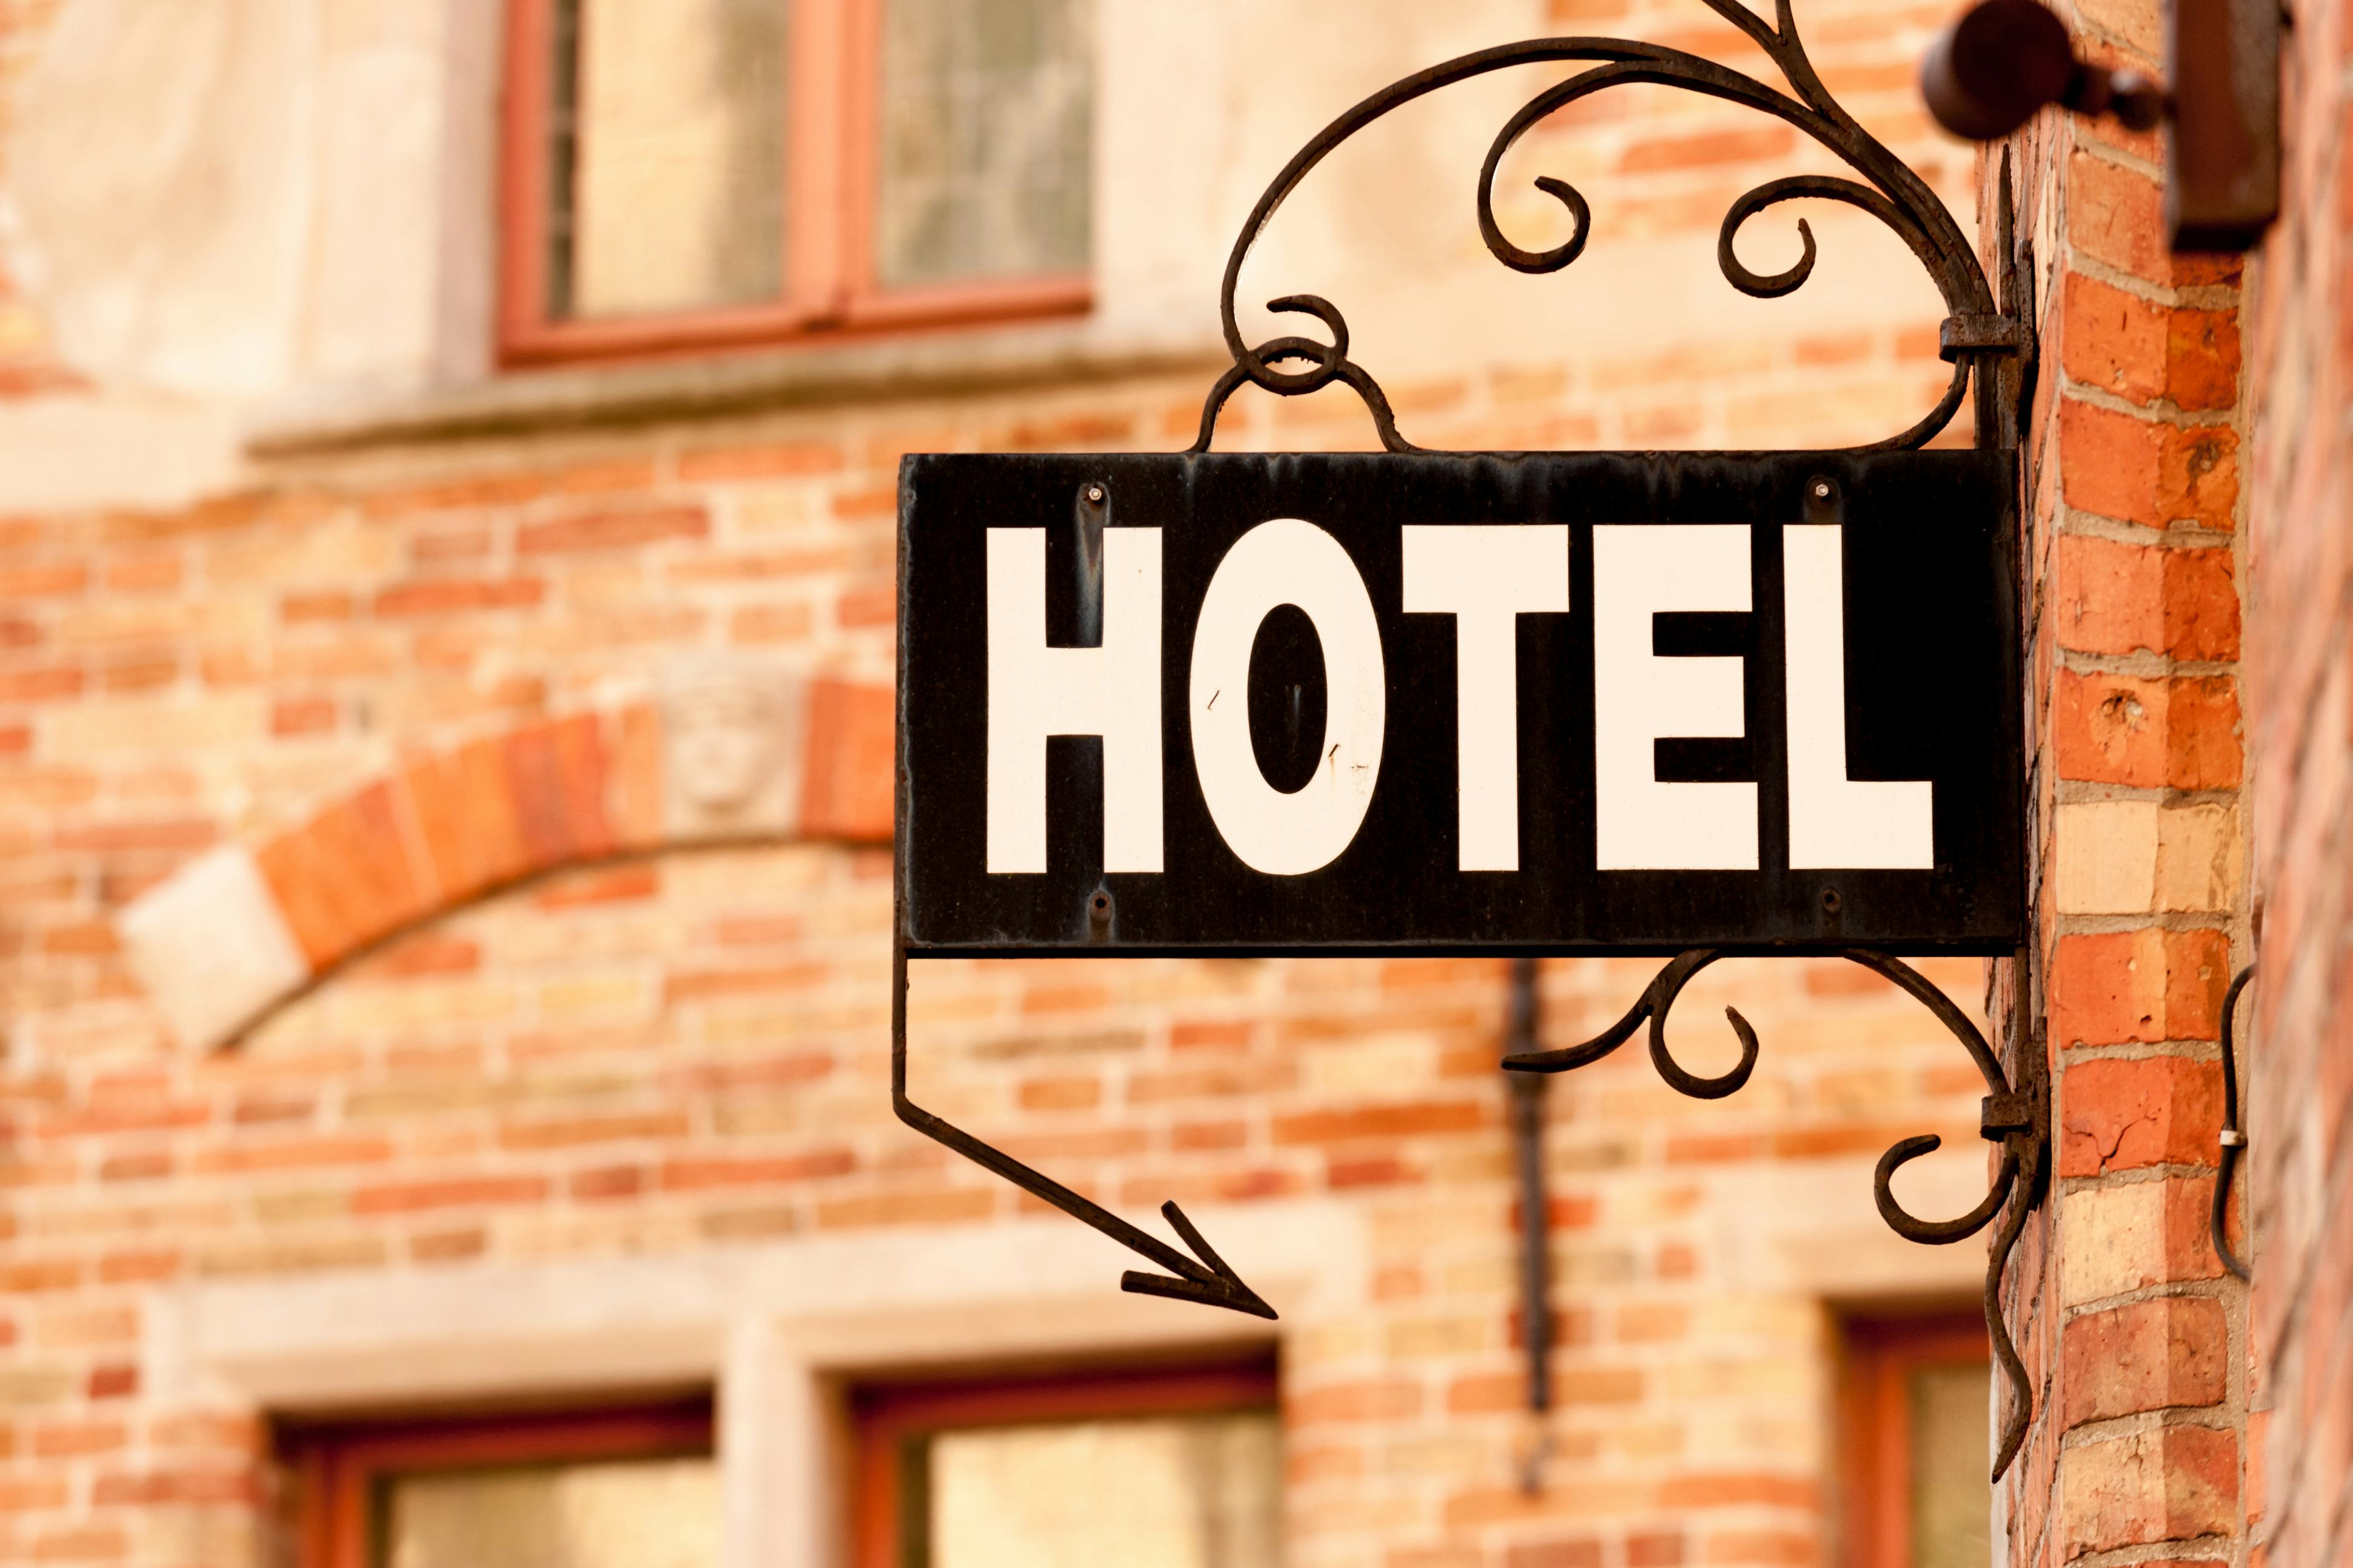 Groeiend aantal hotelovernachtingen vooral aan Nederlandse gasten te danken